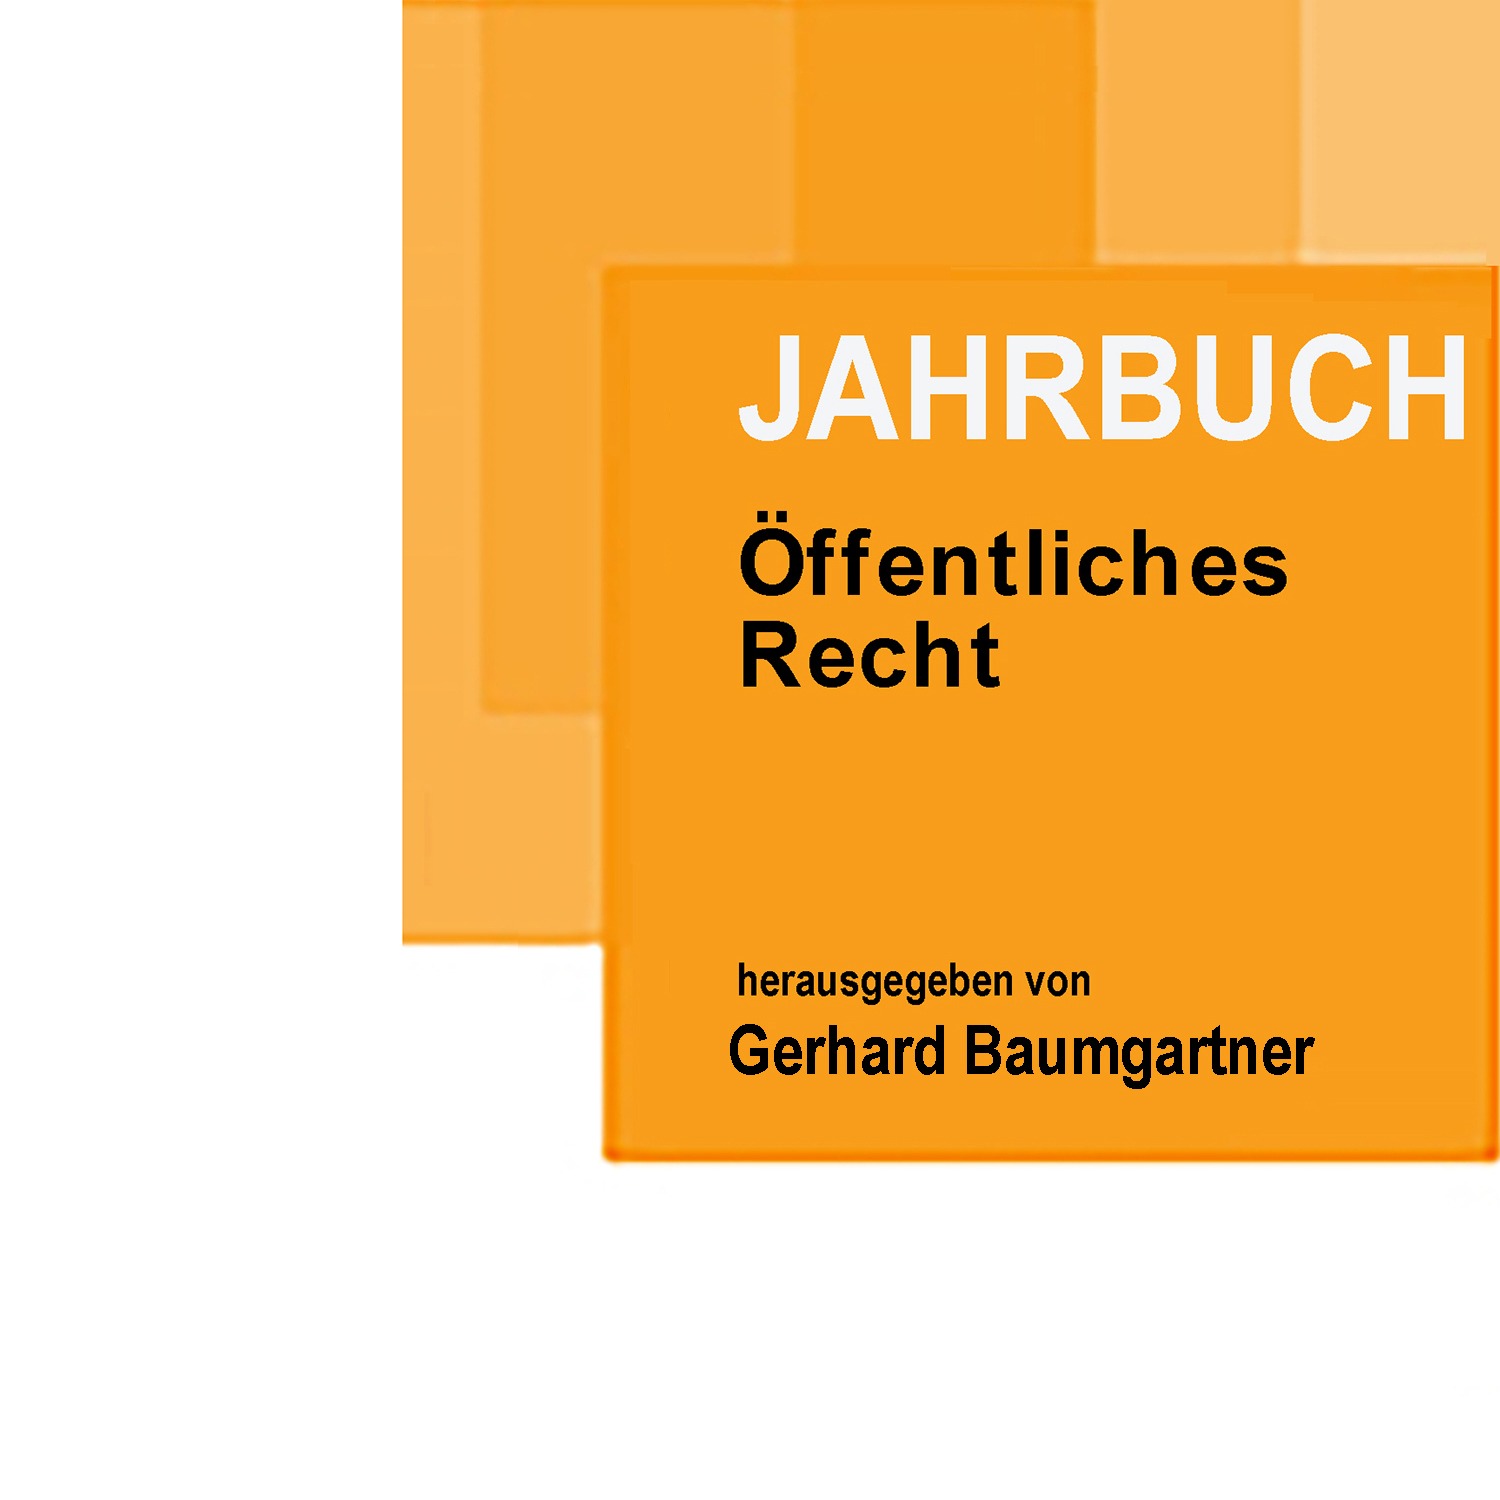 Just published – Rechtliche Rahmenbedingungen der ministeriellen Weisungserteilung an die ASFINAG